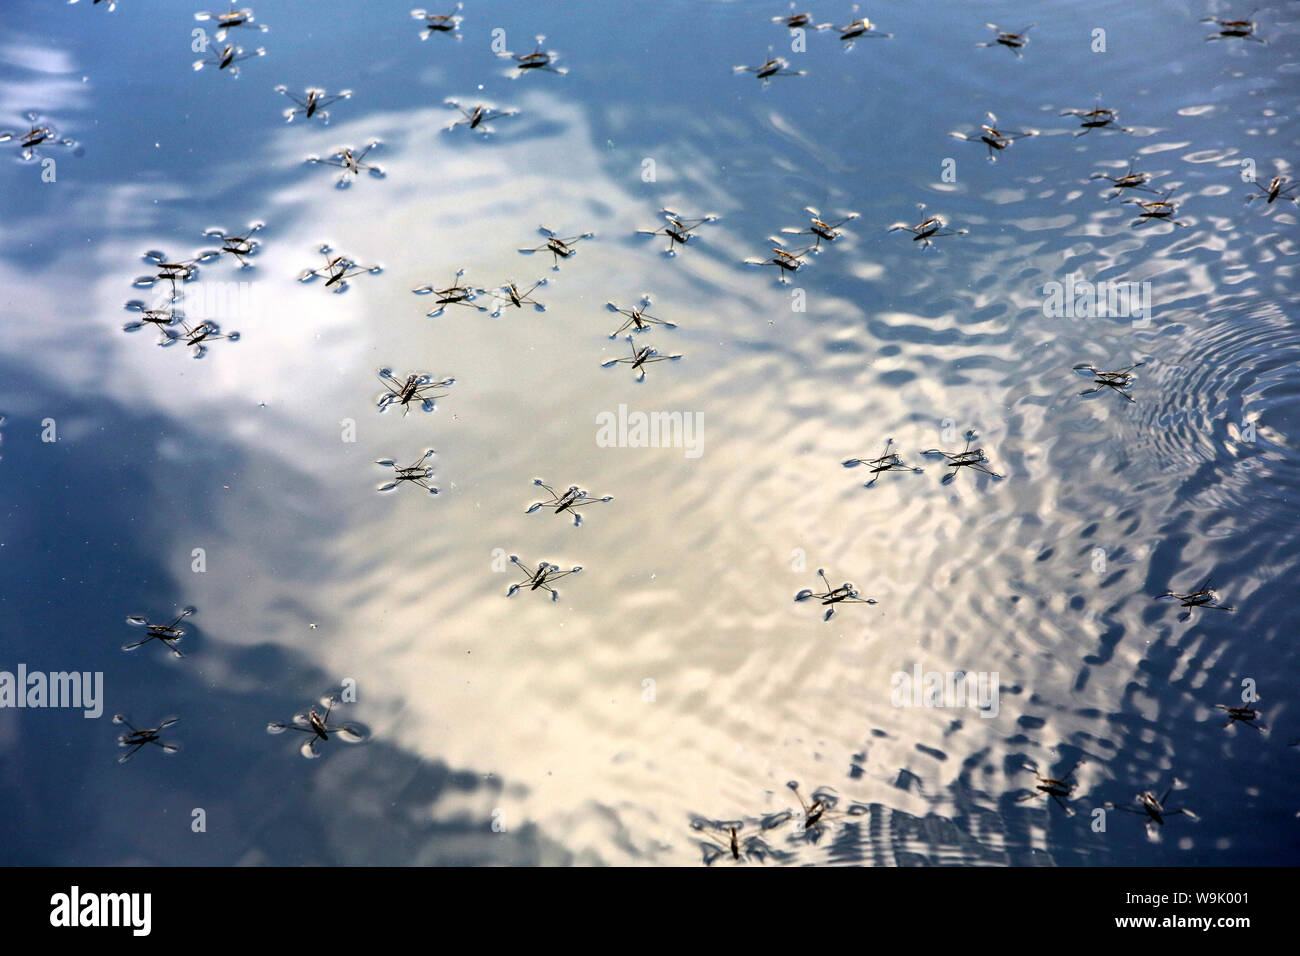 Gerris lacustris ou araignées d'eau en chasse sur un plan d'eau. / Gerris lacustris or water spiders hunting on a body of water. Stock Photo